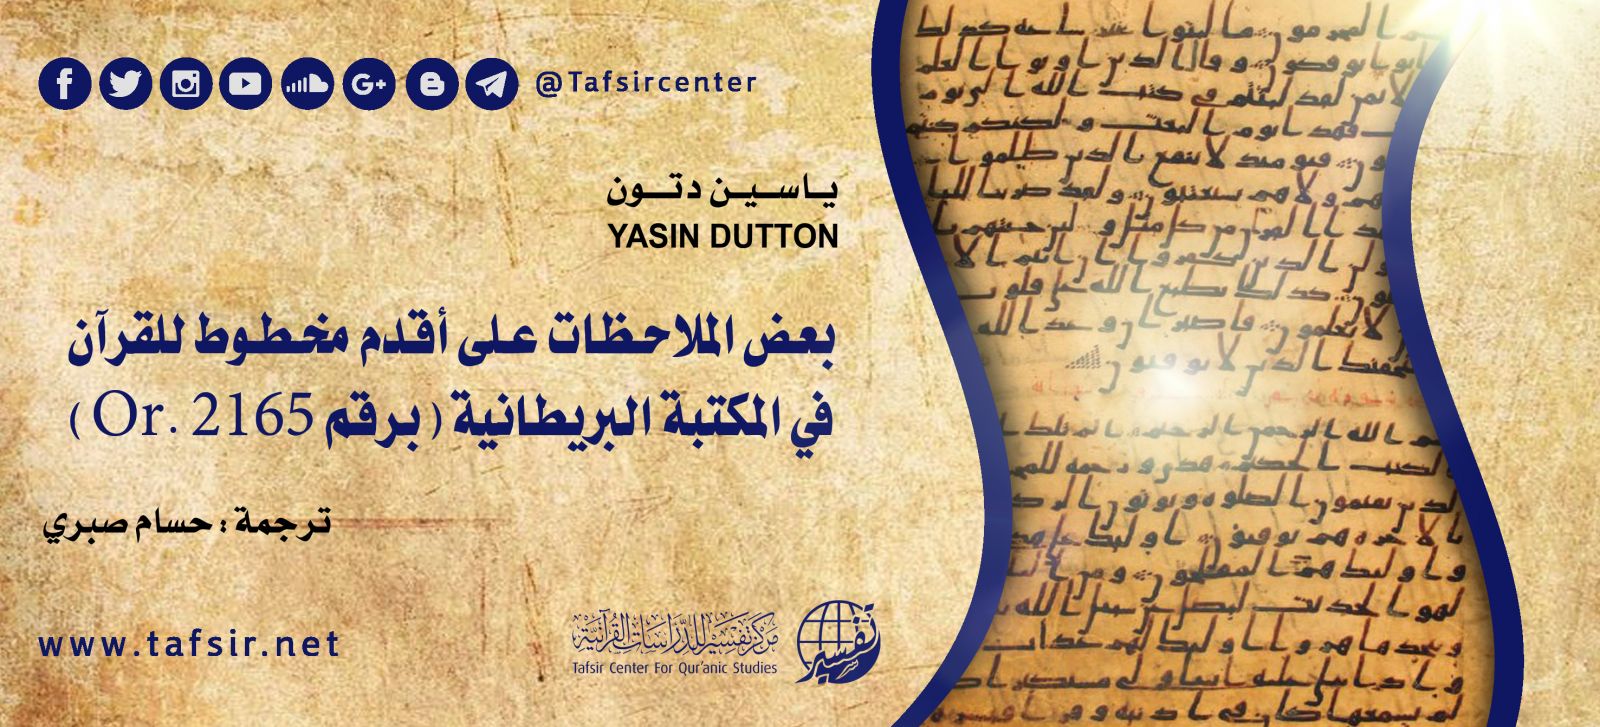 بعض الملاحظات على أقدم مخطوط للقرآن في المكتبة البريطانية برقم Or 2165 Tafsir Center For Quranic Studies مركز تفسير للدراسات القرآنية